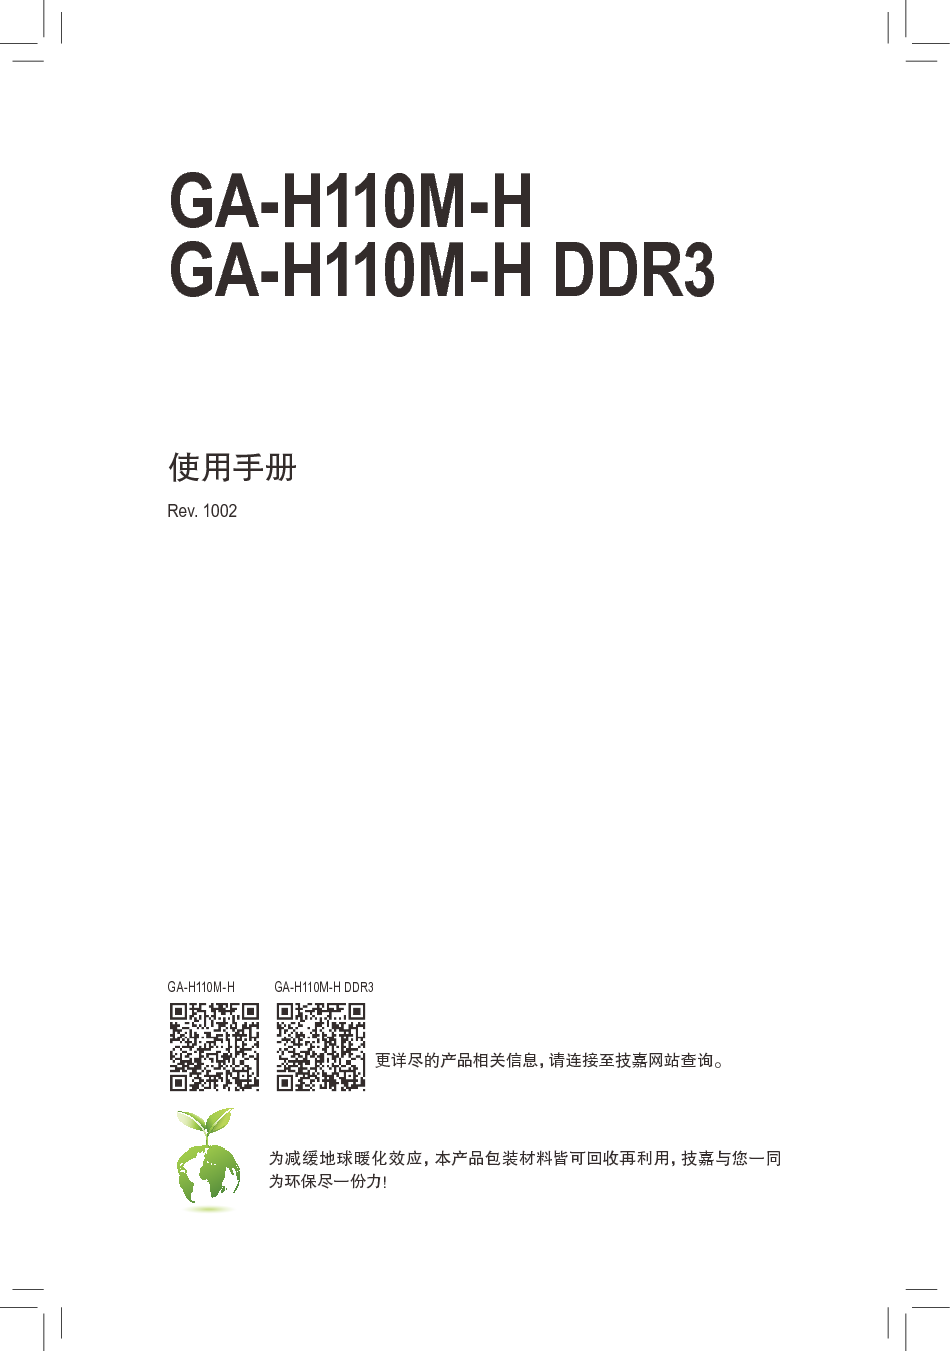 技嘉 Gigabyte GA-H110M-H 使用手册 封面